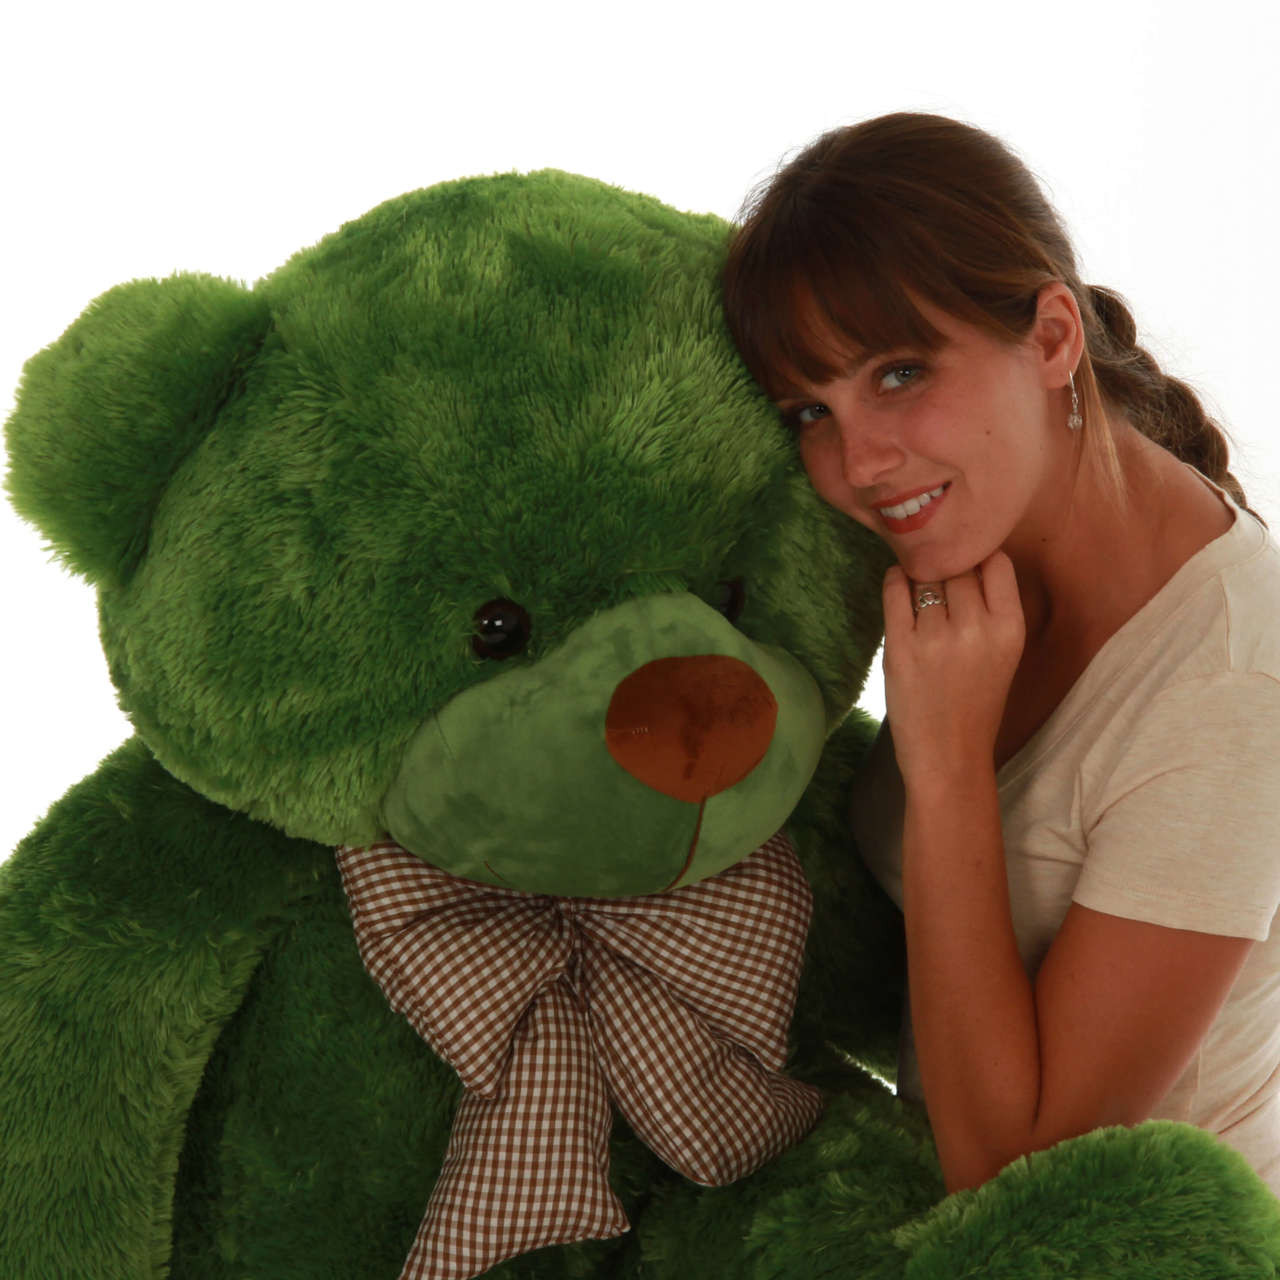 green teddy bear